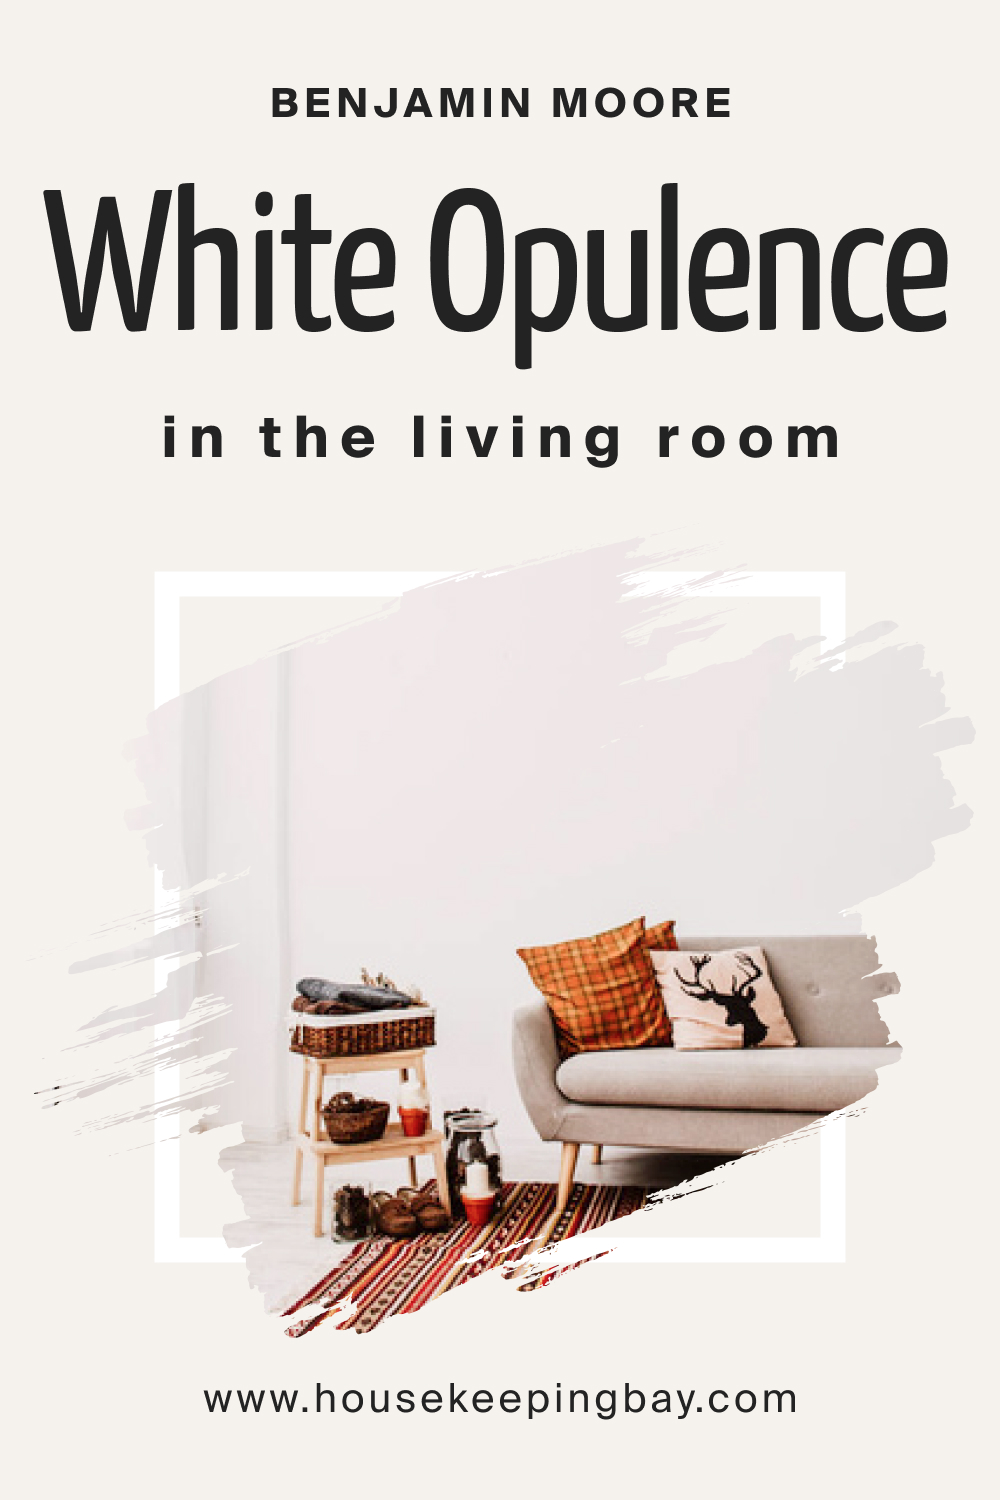 Benjamin Moore. White Opulence OC 69 in the Living Room